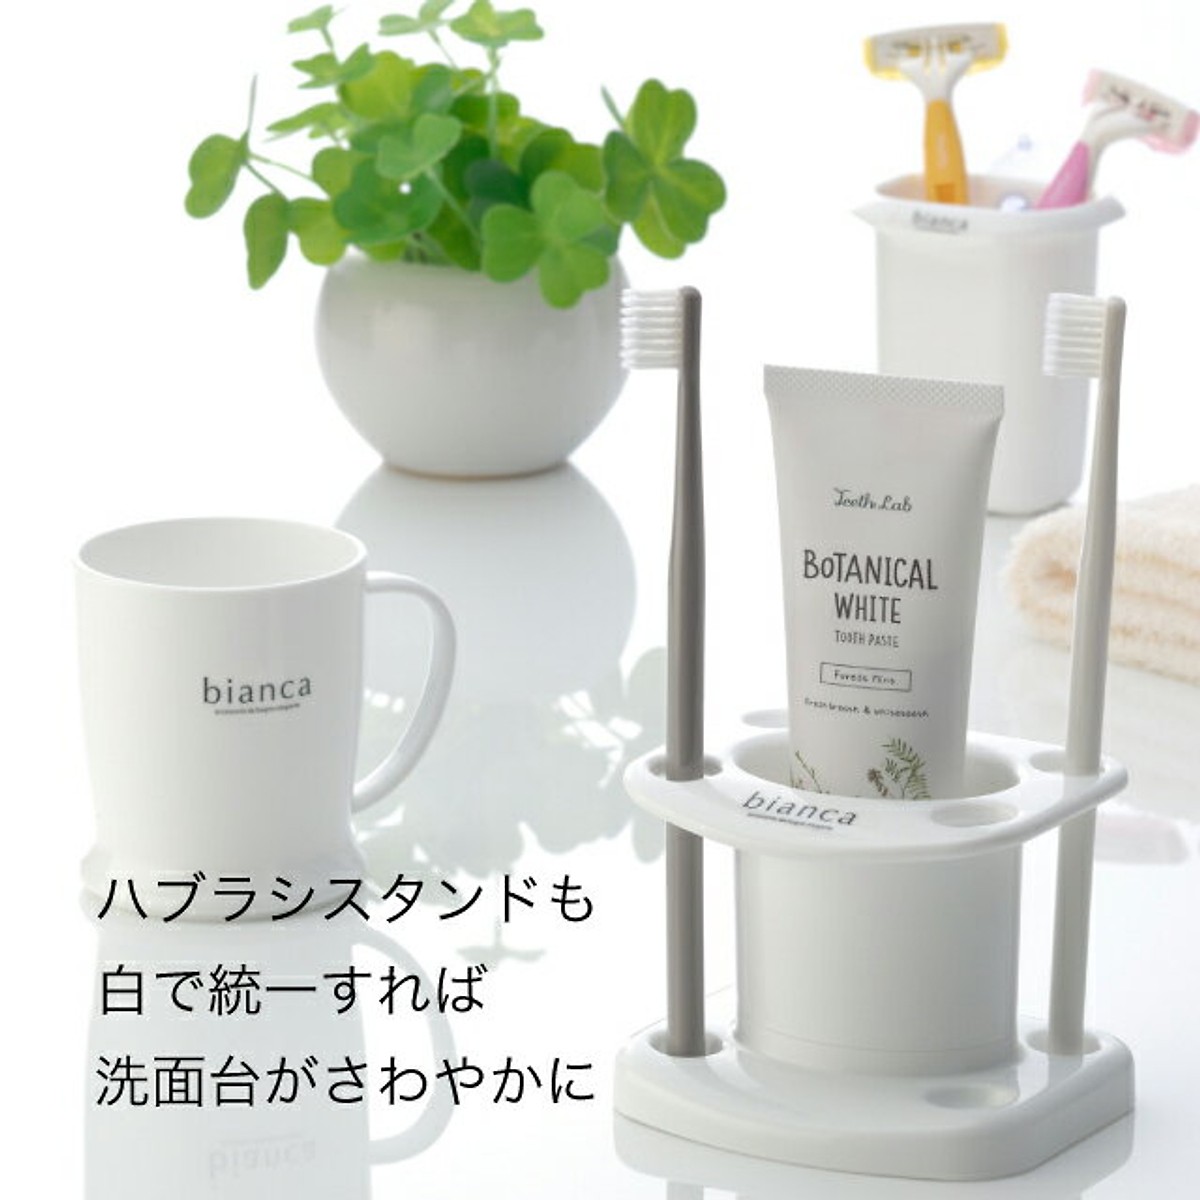 Kệ để kem đánh răng và bàn chải 2 trong 1 Nhật Bản + Tặng gói hồng trà sữa (Cafe) Maccaca siêu ngon